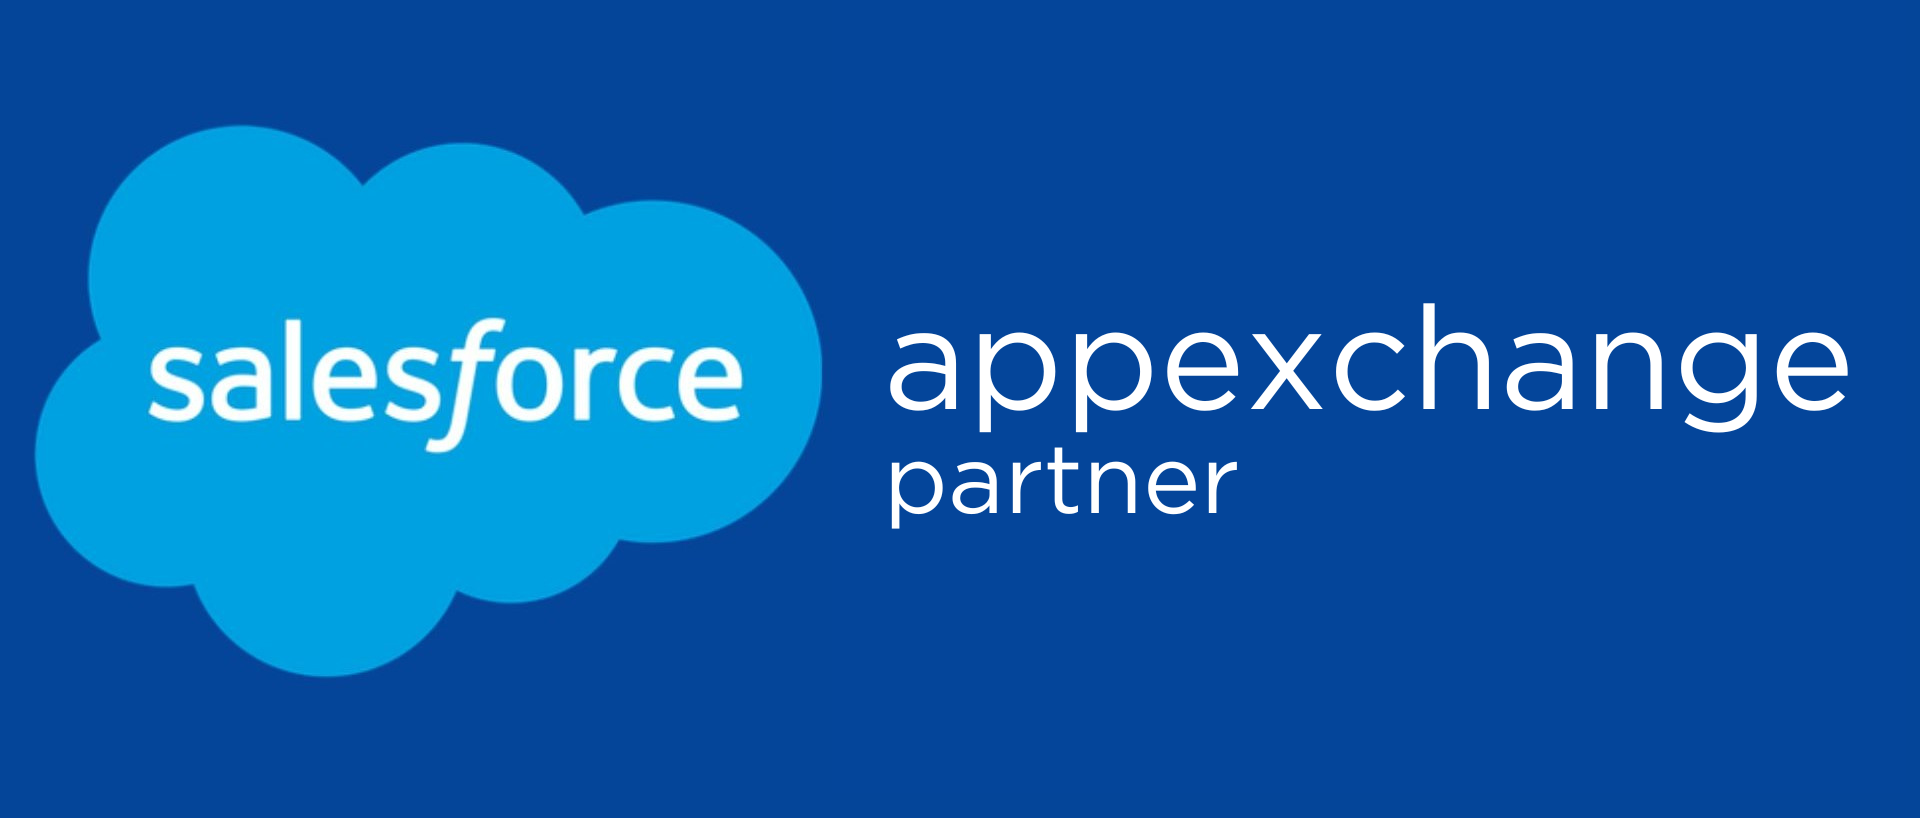 Salesforce Appexchange Partner